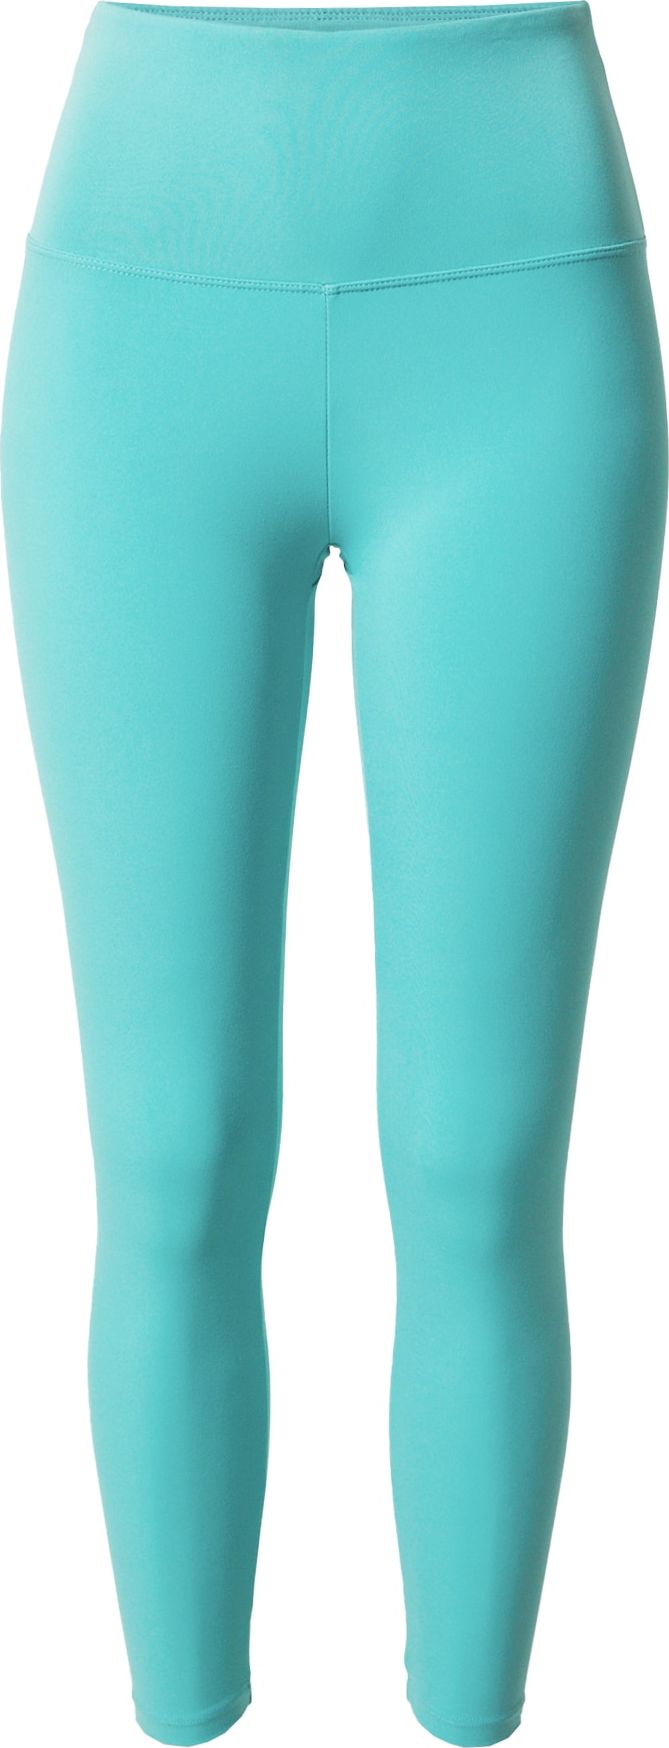 Bally Sportovní kalhoty 'KAYLA' azurová modrá